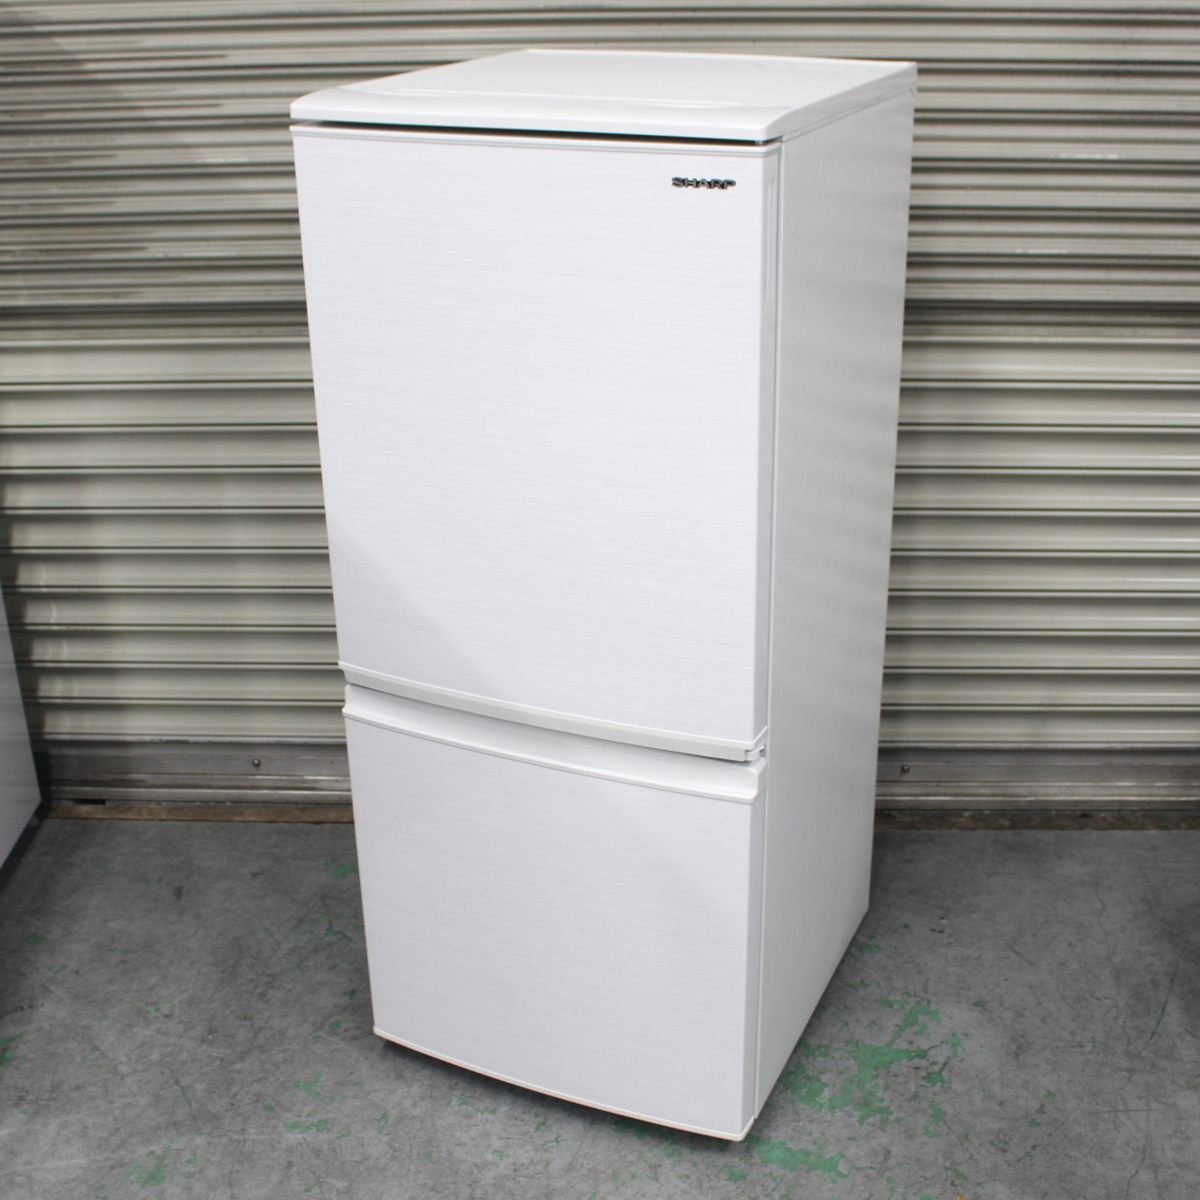 横浜市都筑区にて シャープ ノンフロン冷凍冷蔵庫 SJ-D14F 2020年製 を出張買取させて頂きました。